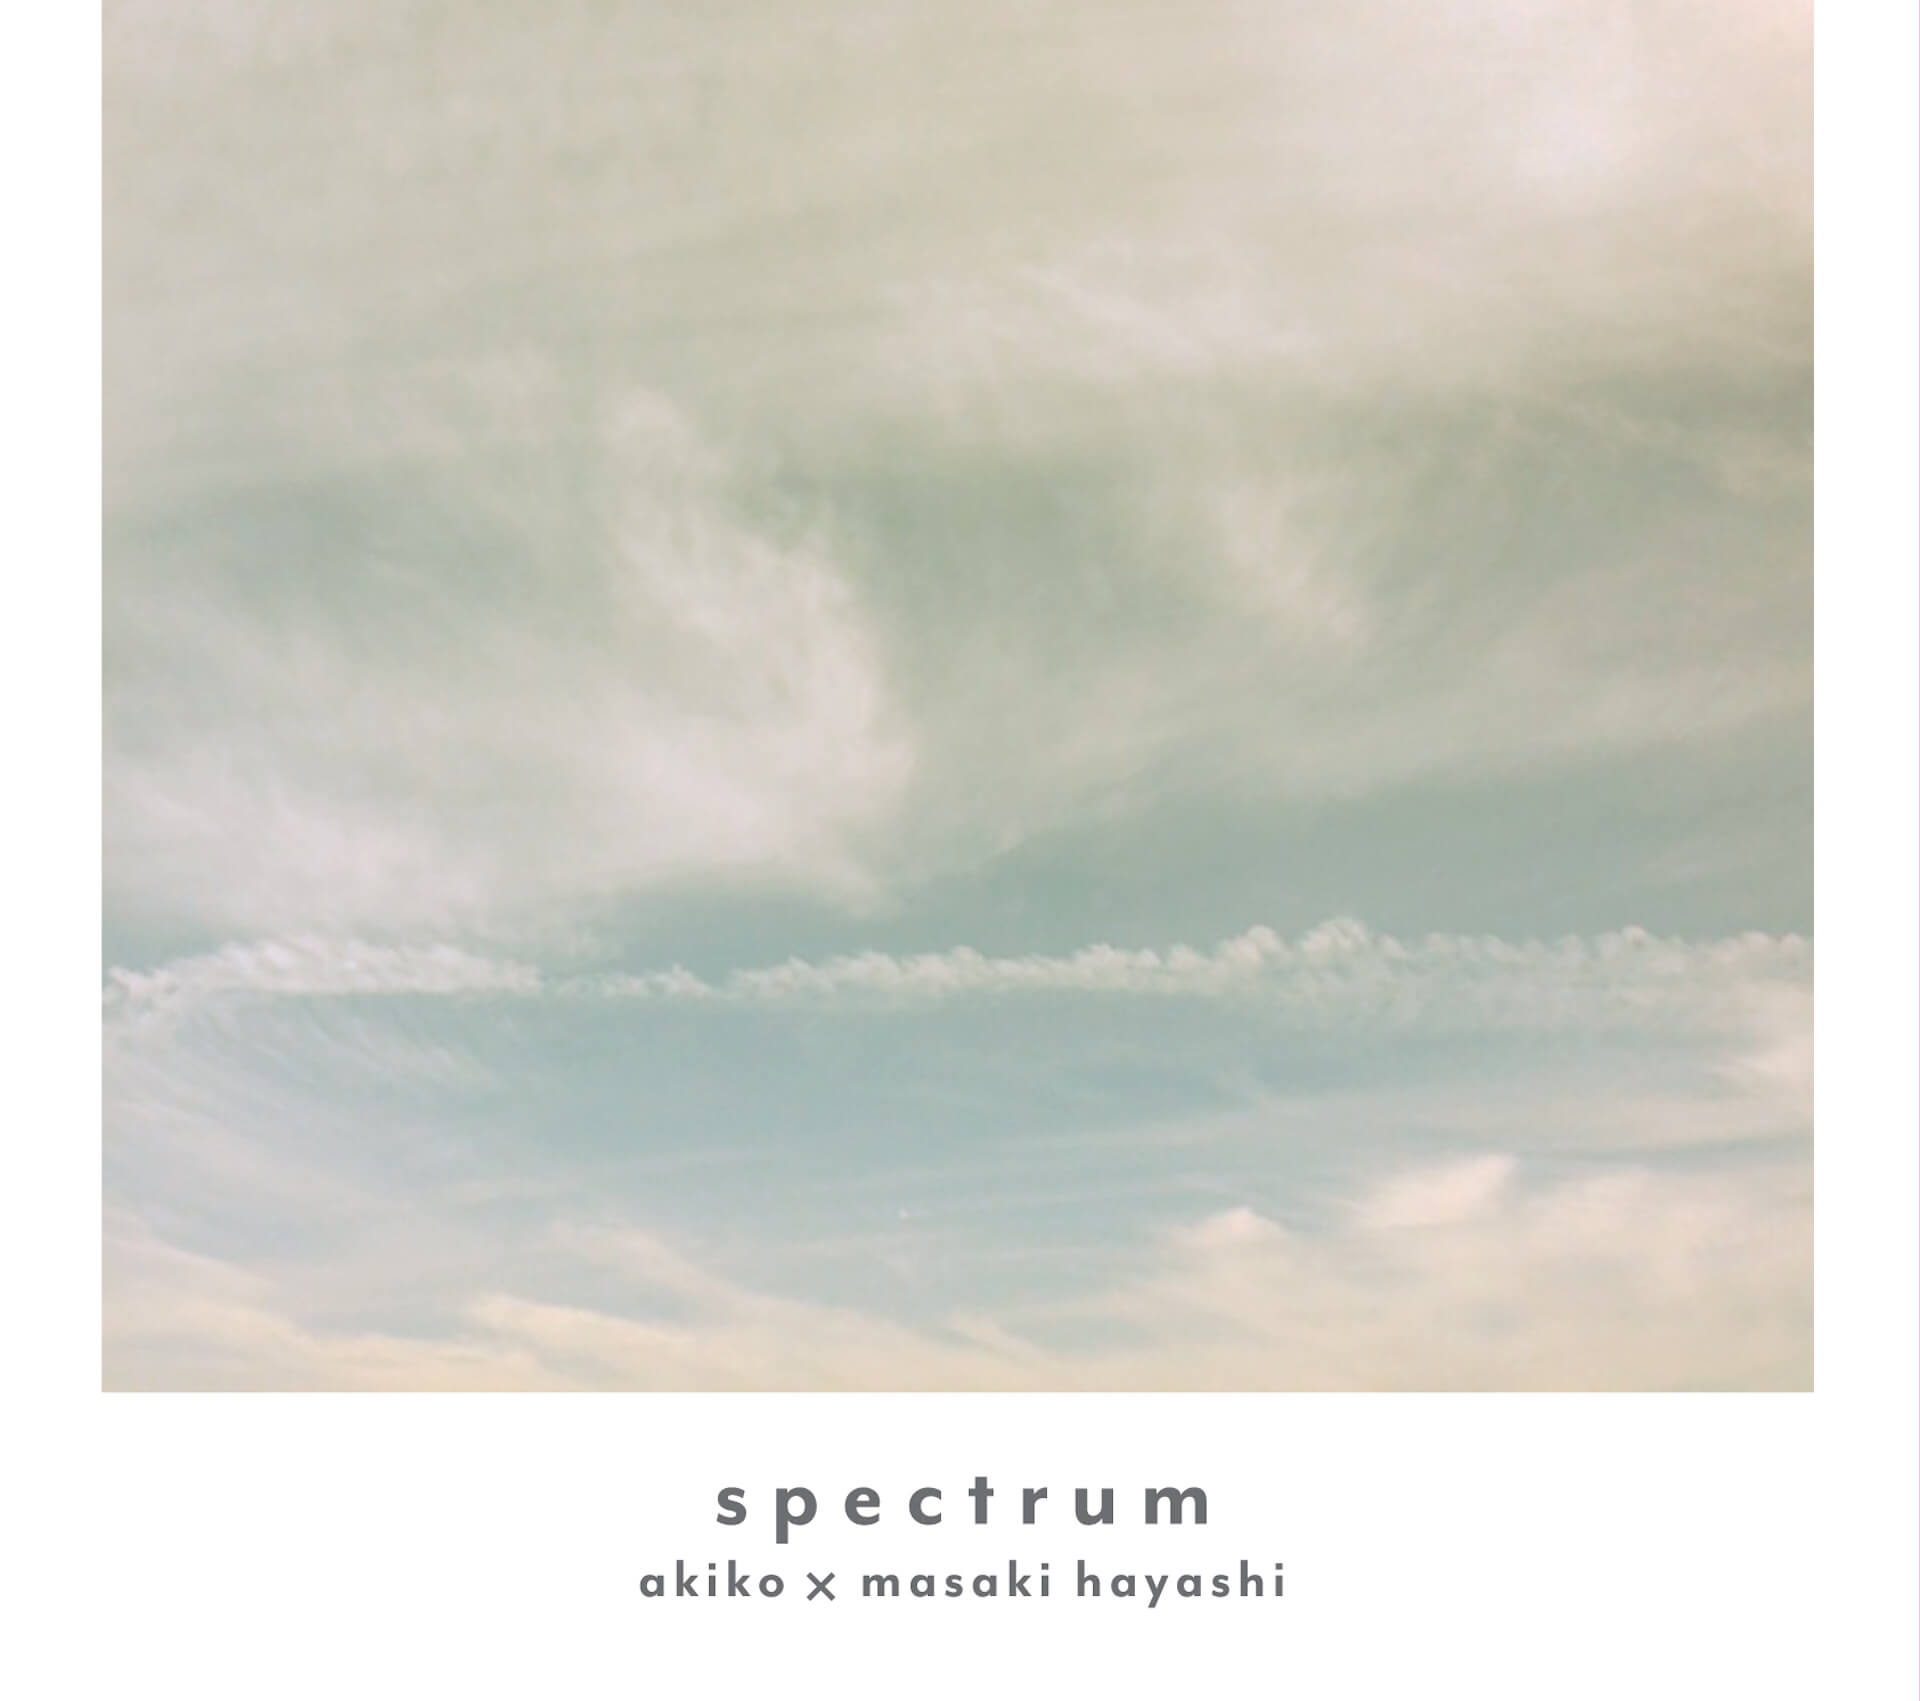 名門ジャズレーベル〈ヴァーヴ〉初の日本人シンガー・akikoが名ピアニスト林正樹とコラボしたアルバム『spectrum』に注目 music190917_akiko_spectrum_5